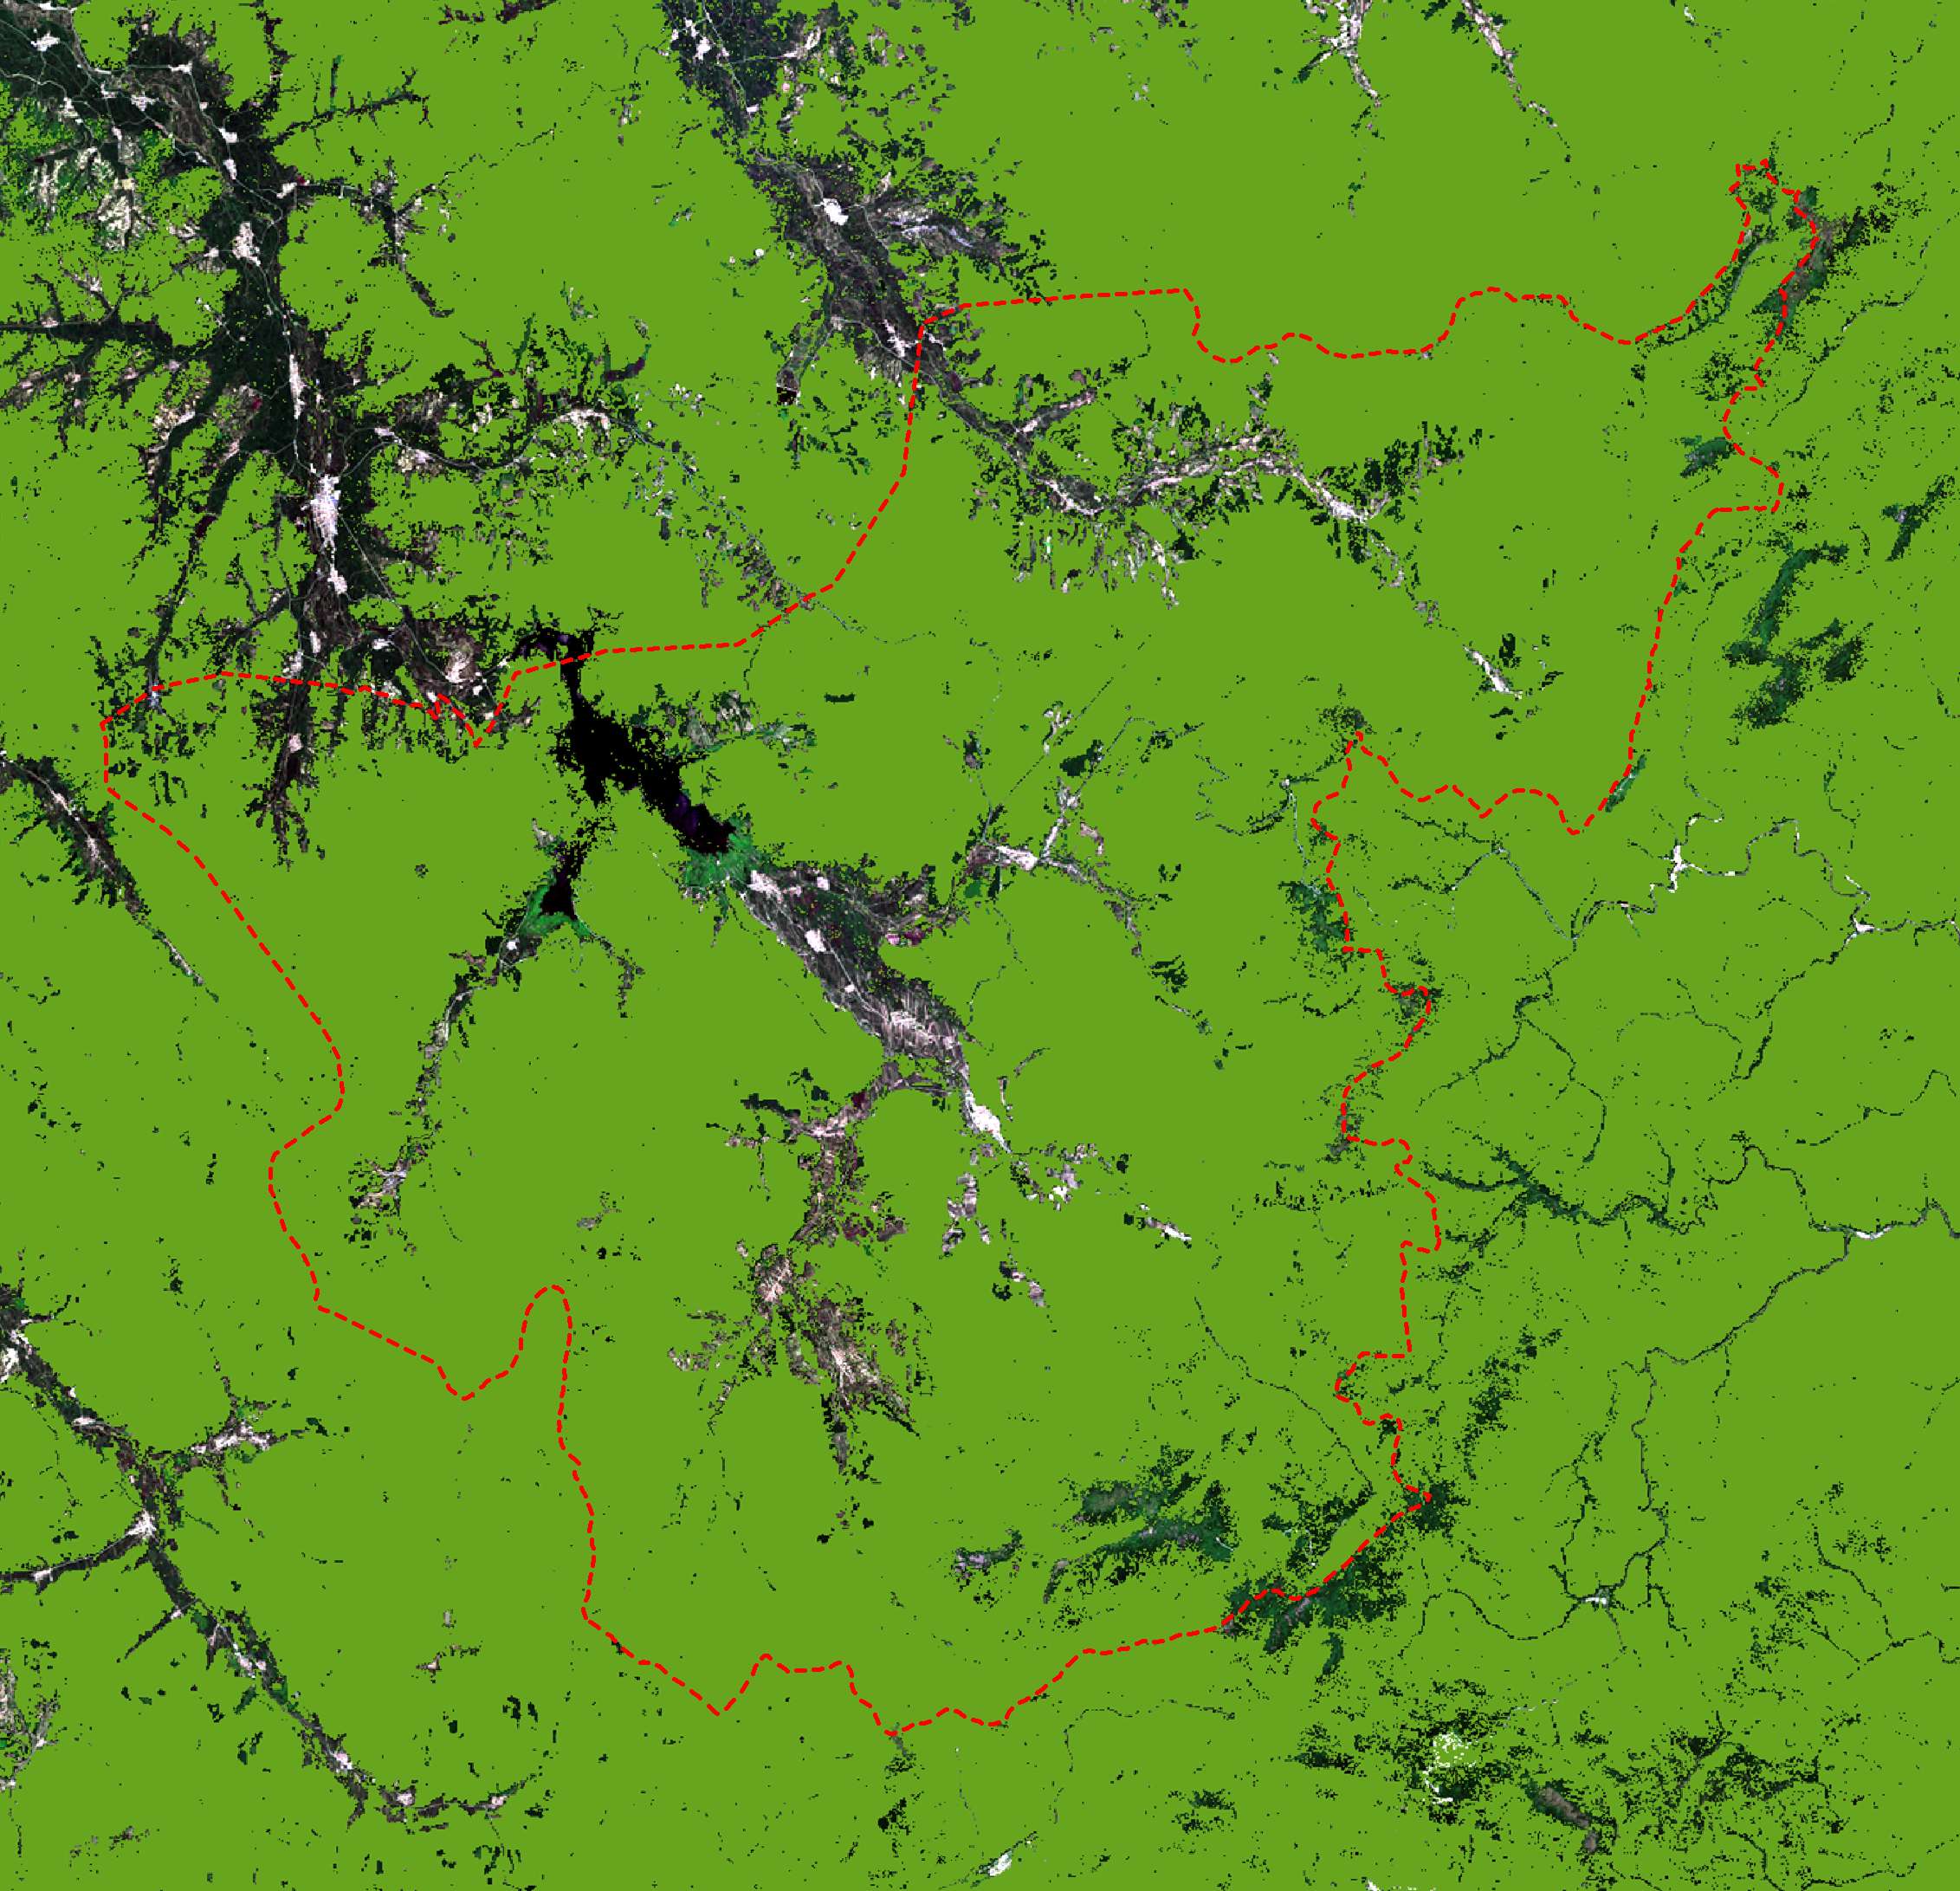 山河屯林业局林区2019.07.10拍摄卫星图-源自北京亿景图